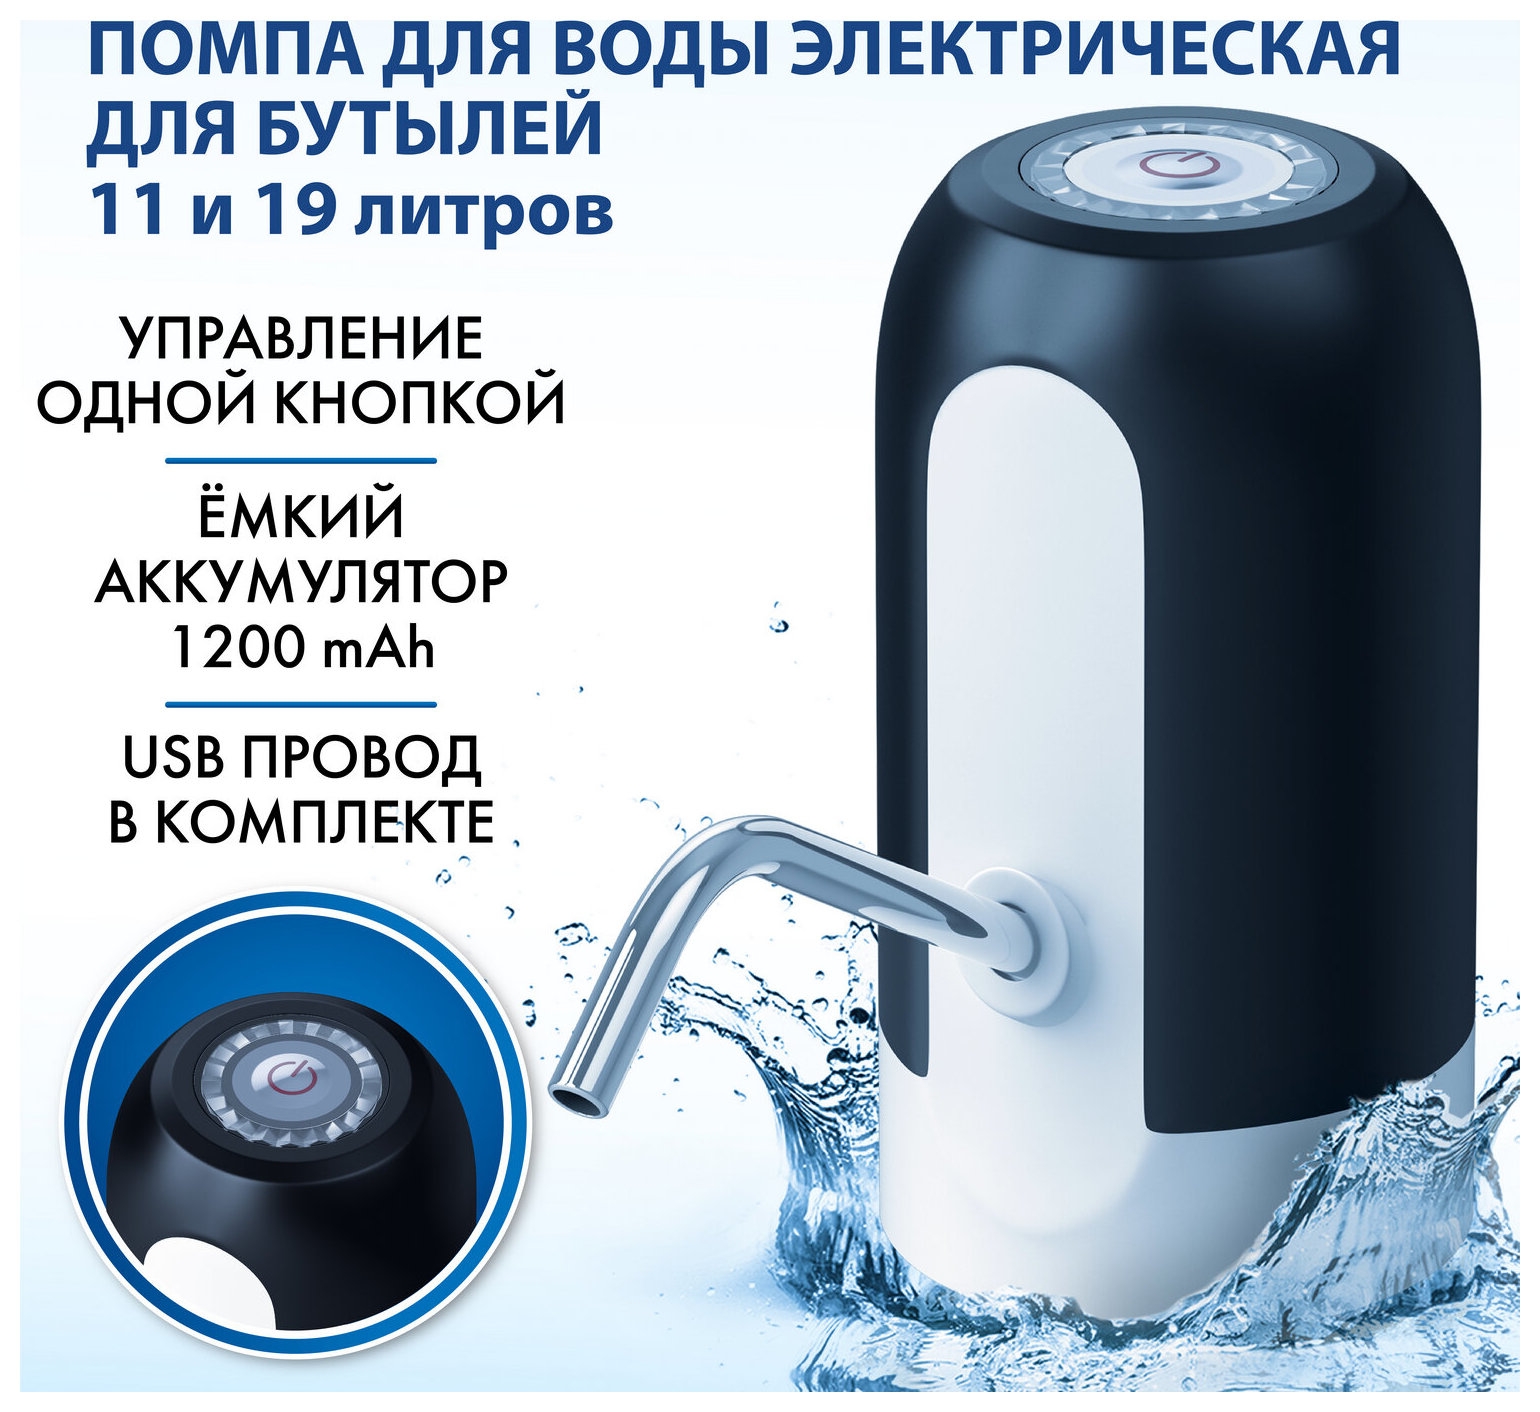 

Помпа для воды электрическая Sonnen Ewd161wb, 1,6 л/мин, аккумулятор, черная, 455469, Черный